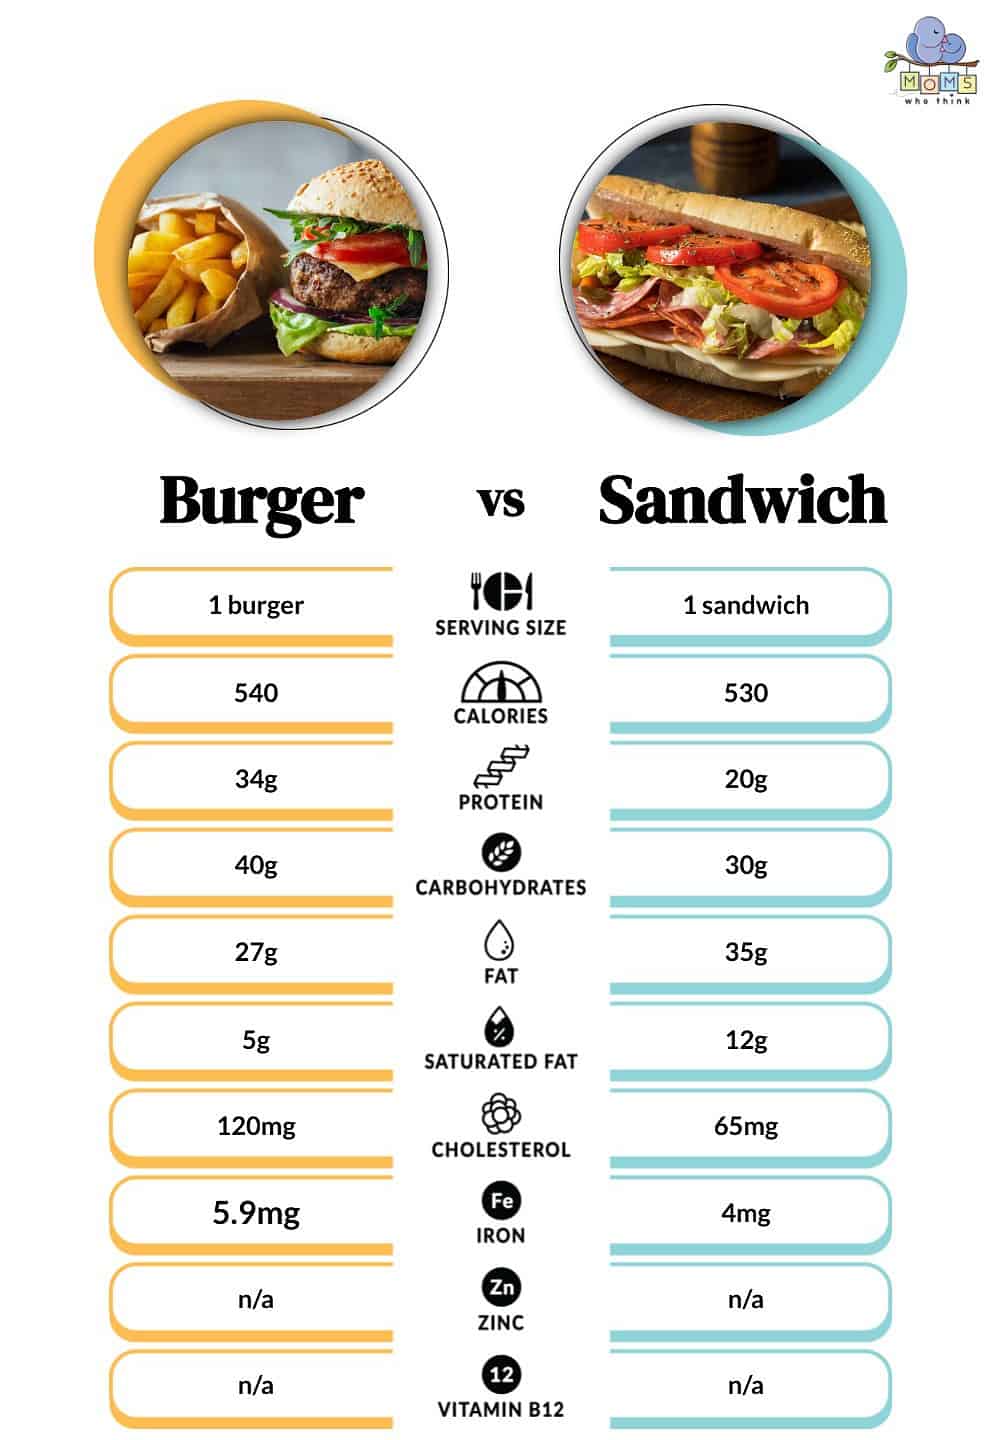 Burger vs Sandwich Nutritional Facts